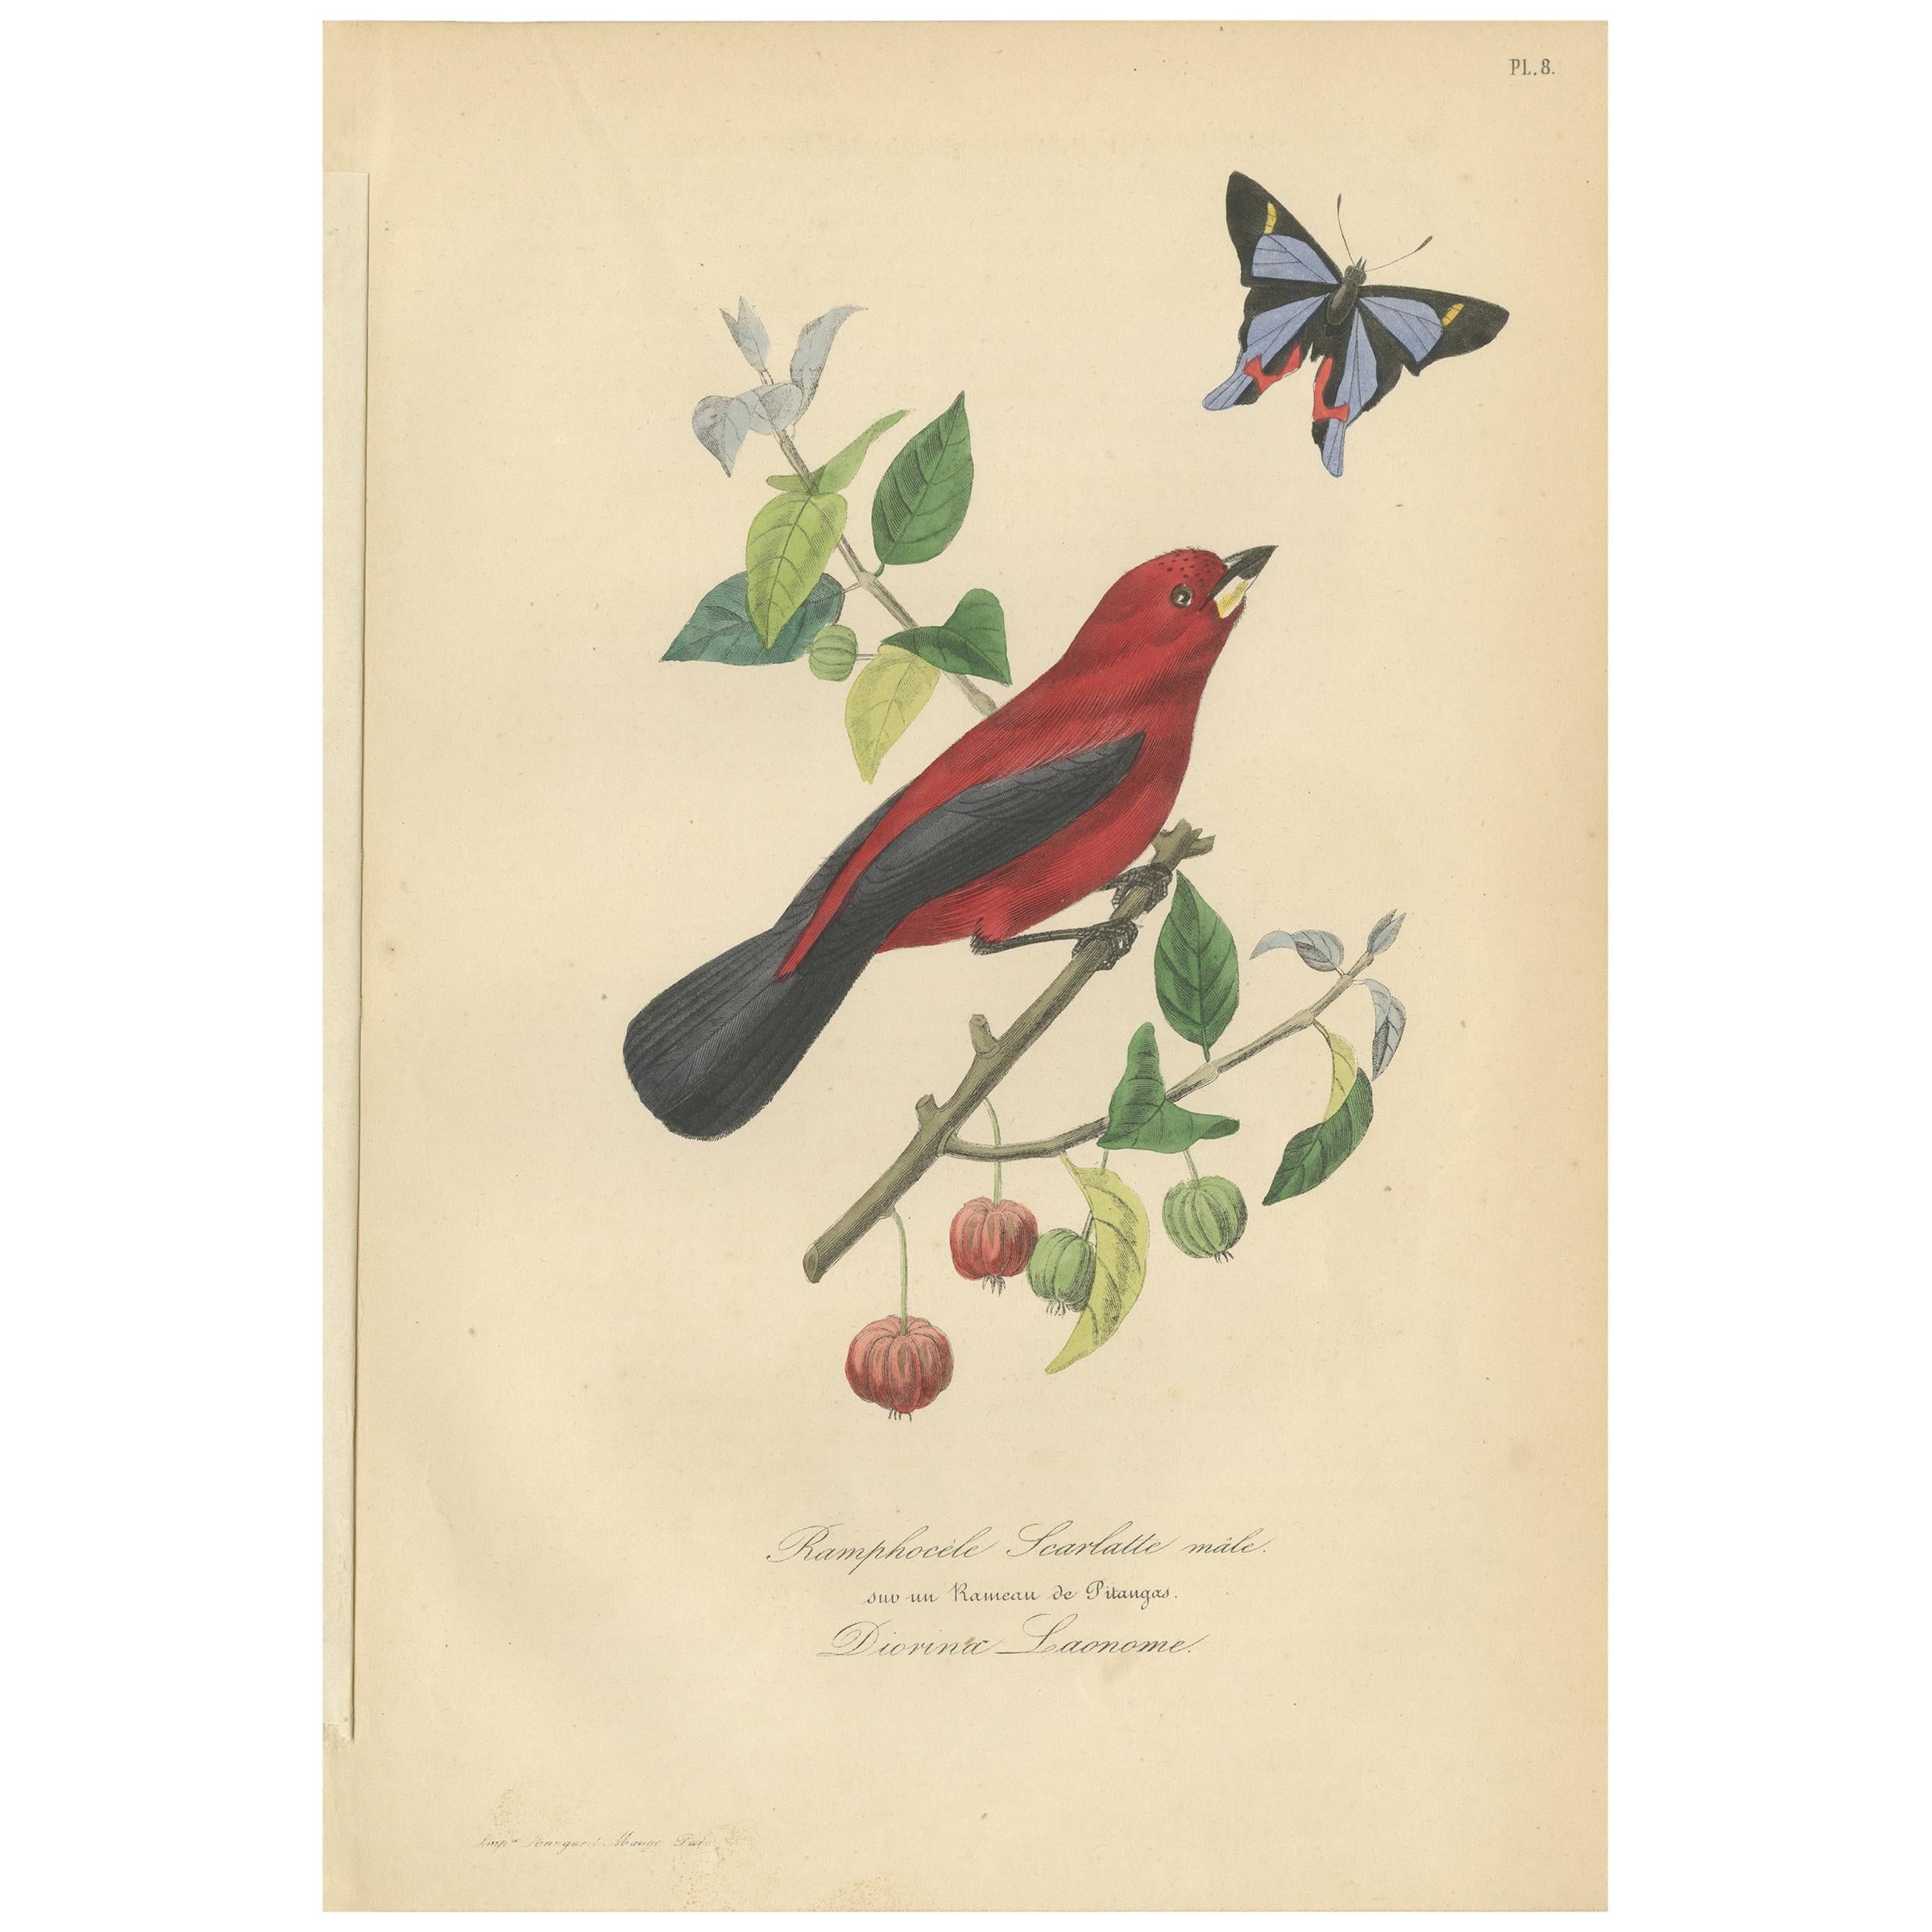 Antique Bird Print of a Ramphocelus Bird and a Butterfly, 1853